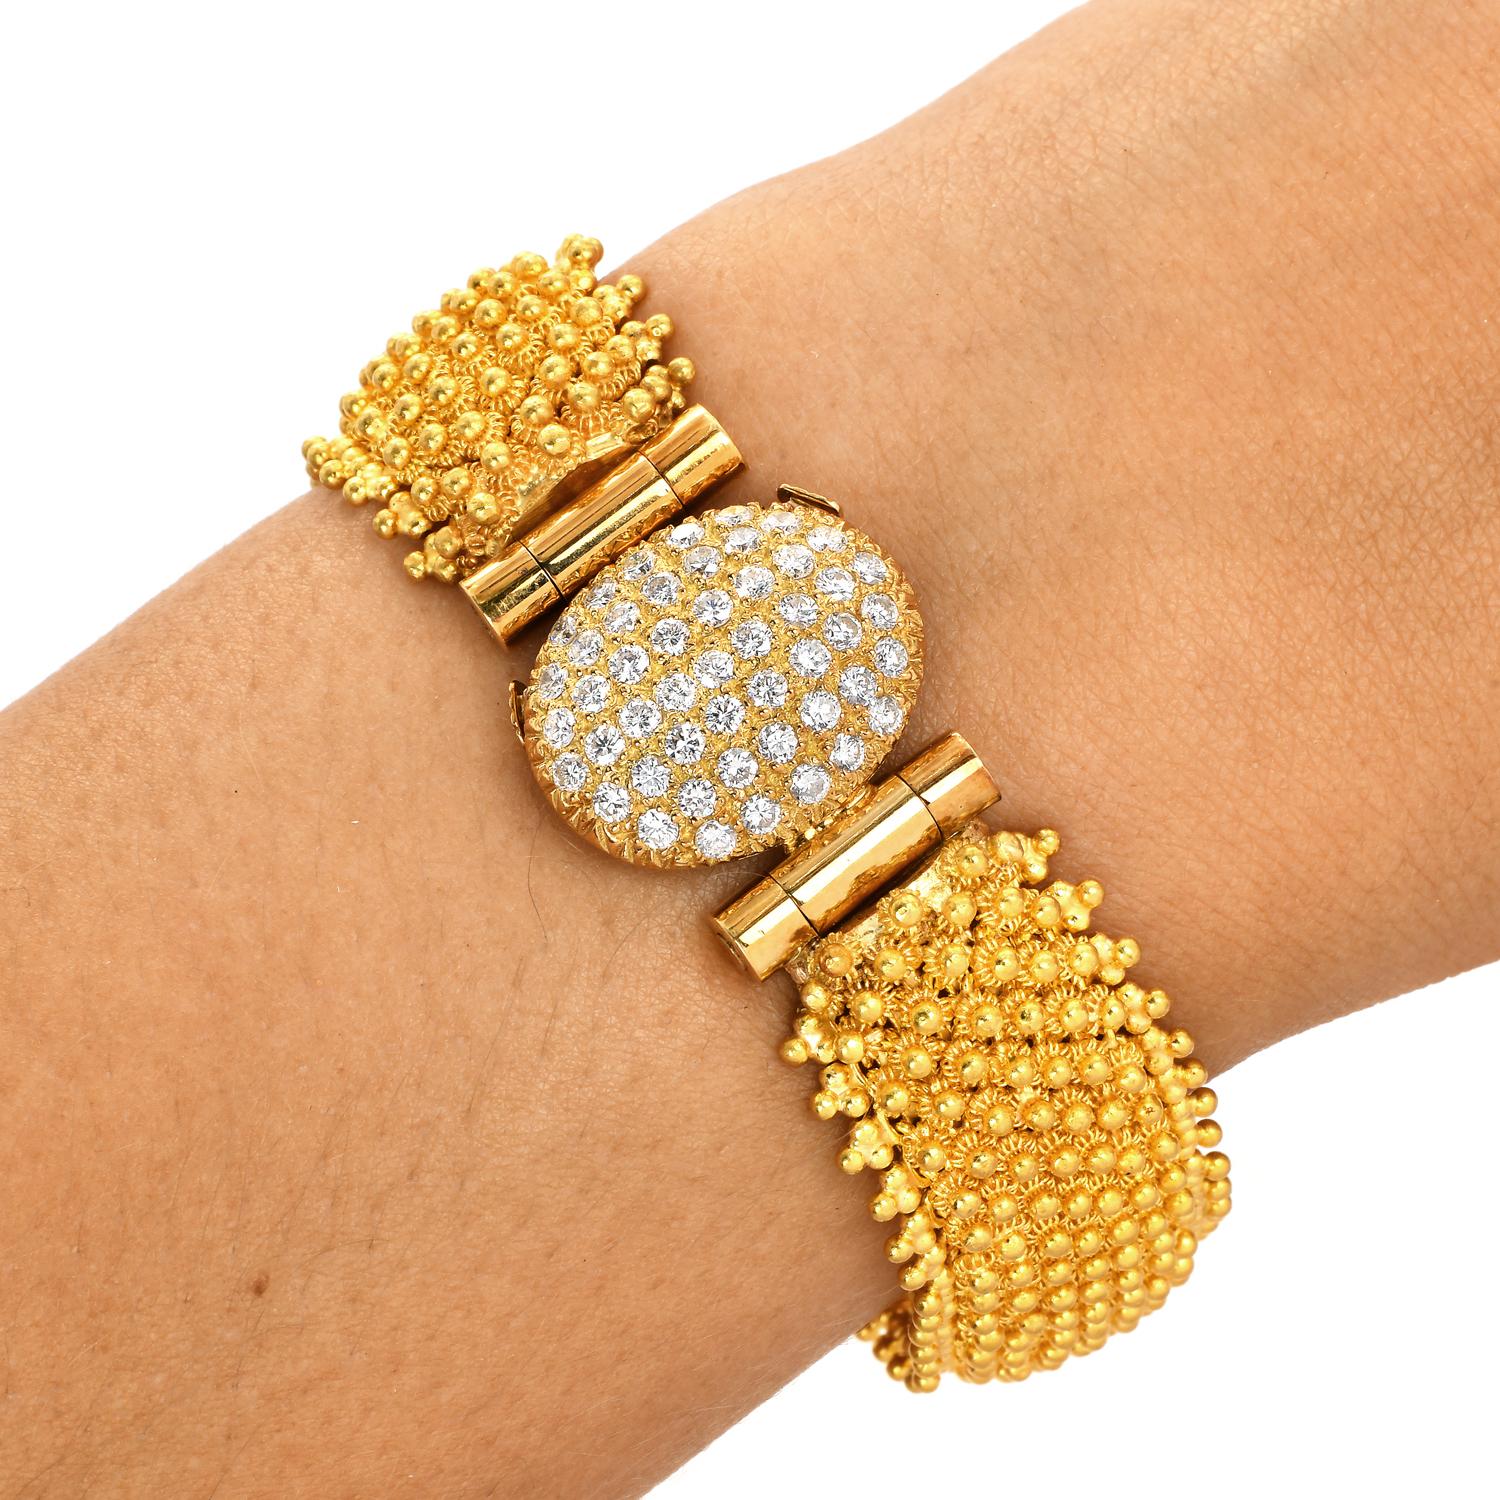 Vintage Retro Diamond 24K reines Gelbgold Link Mesh Armband

Das Armband aus massivem 18-karätigem Gelbgold mit einer Perlenstruktur ist von höchster handwerklicher Qualität.

Dieses Armband ist mit einem 18k Gelbgold Diamanten Verschluss mit